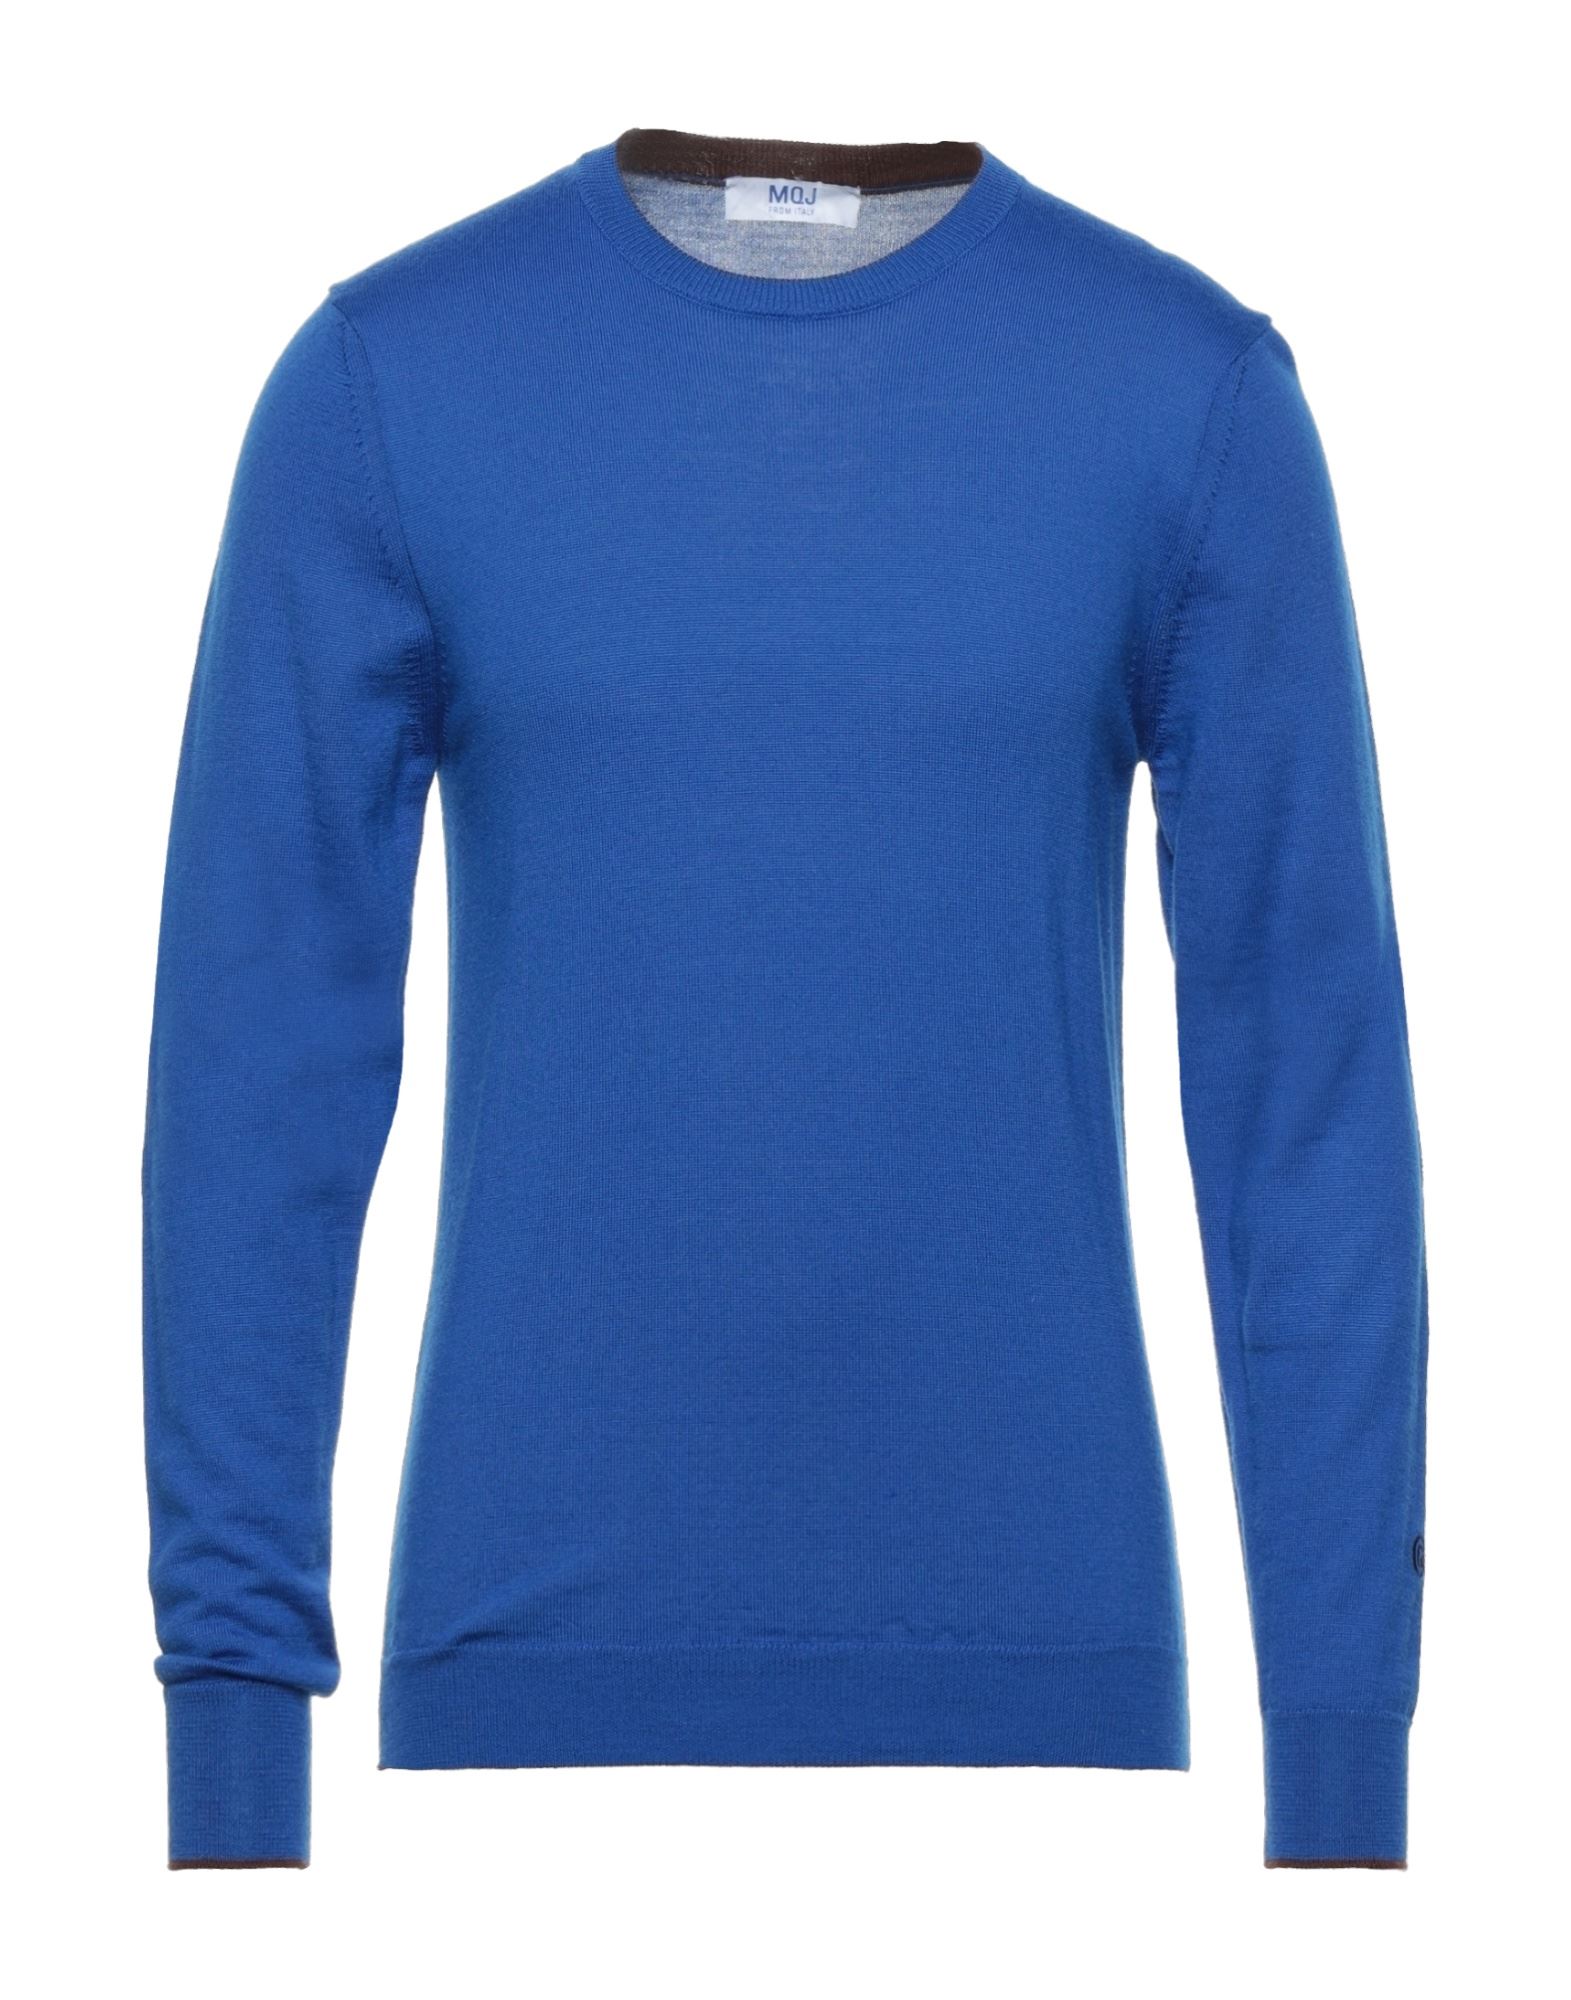 Mqj Sweaters In Bright Blue